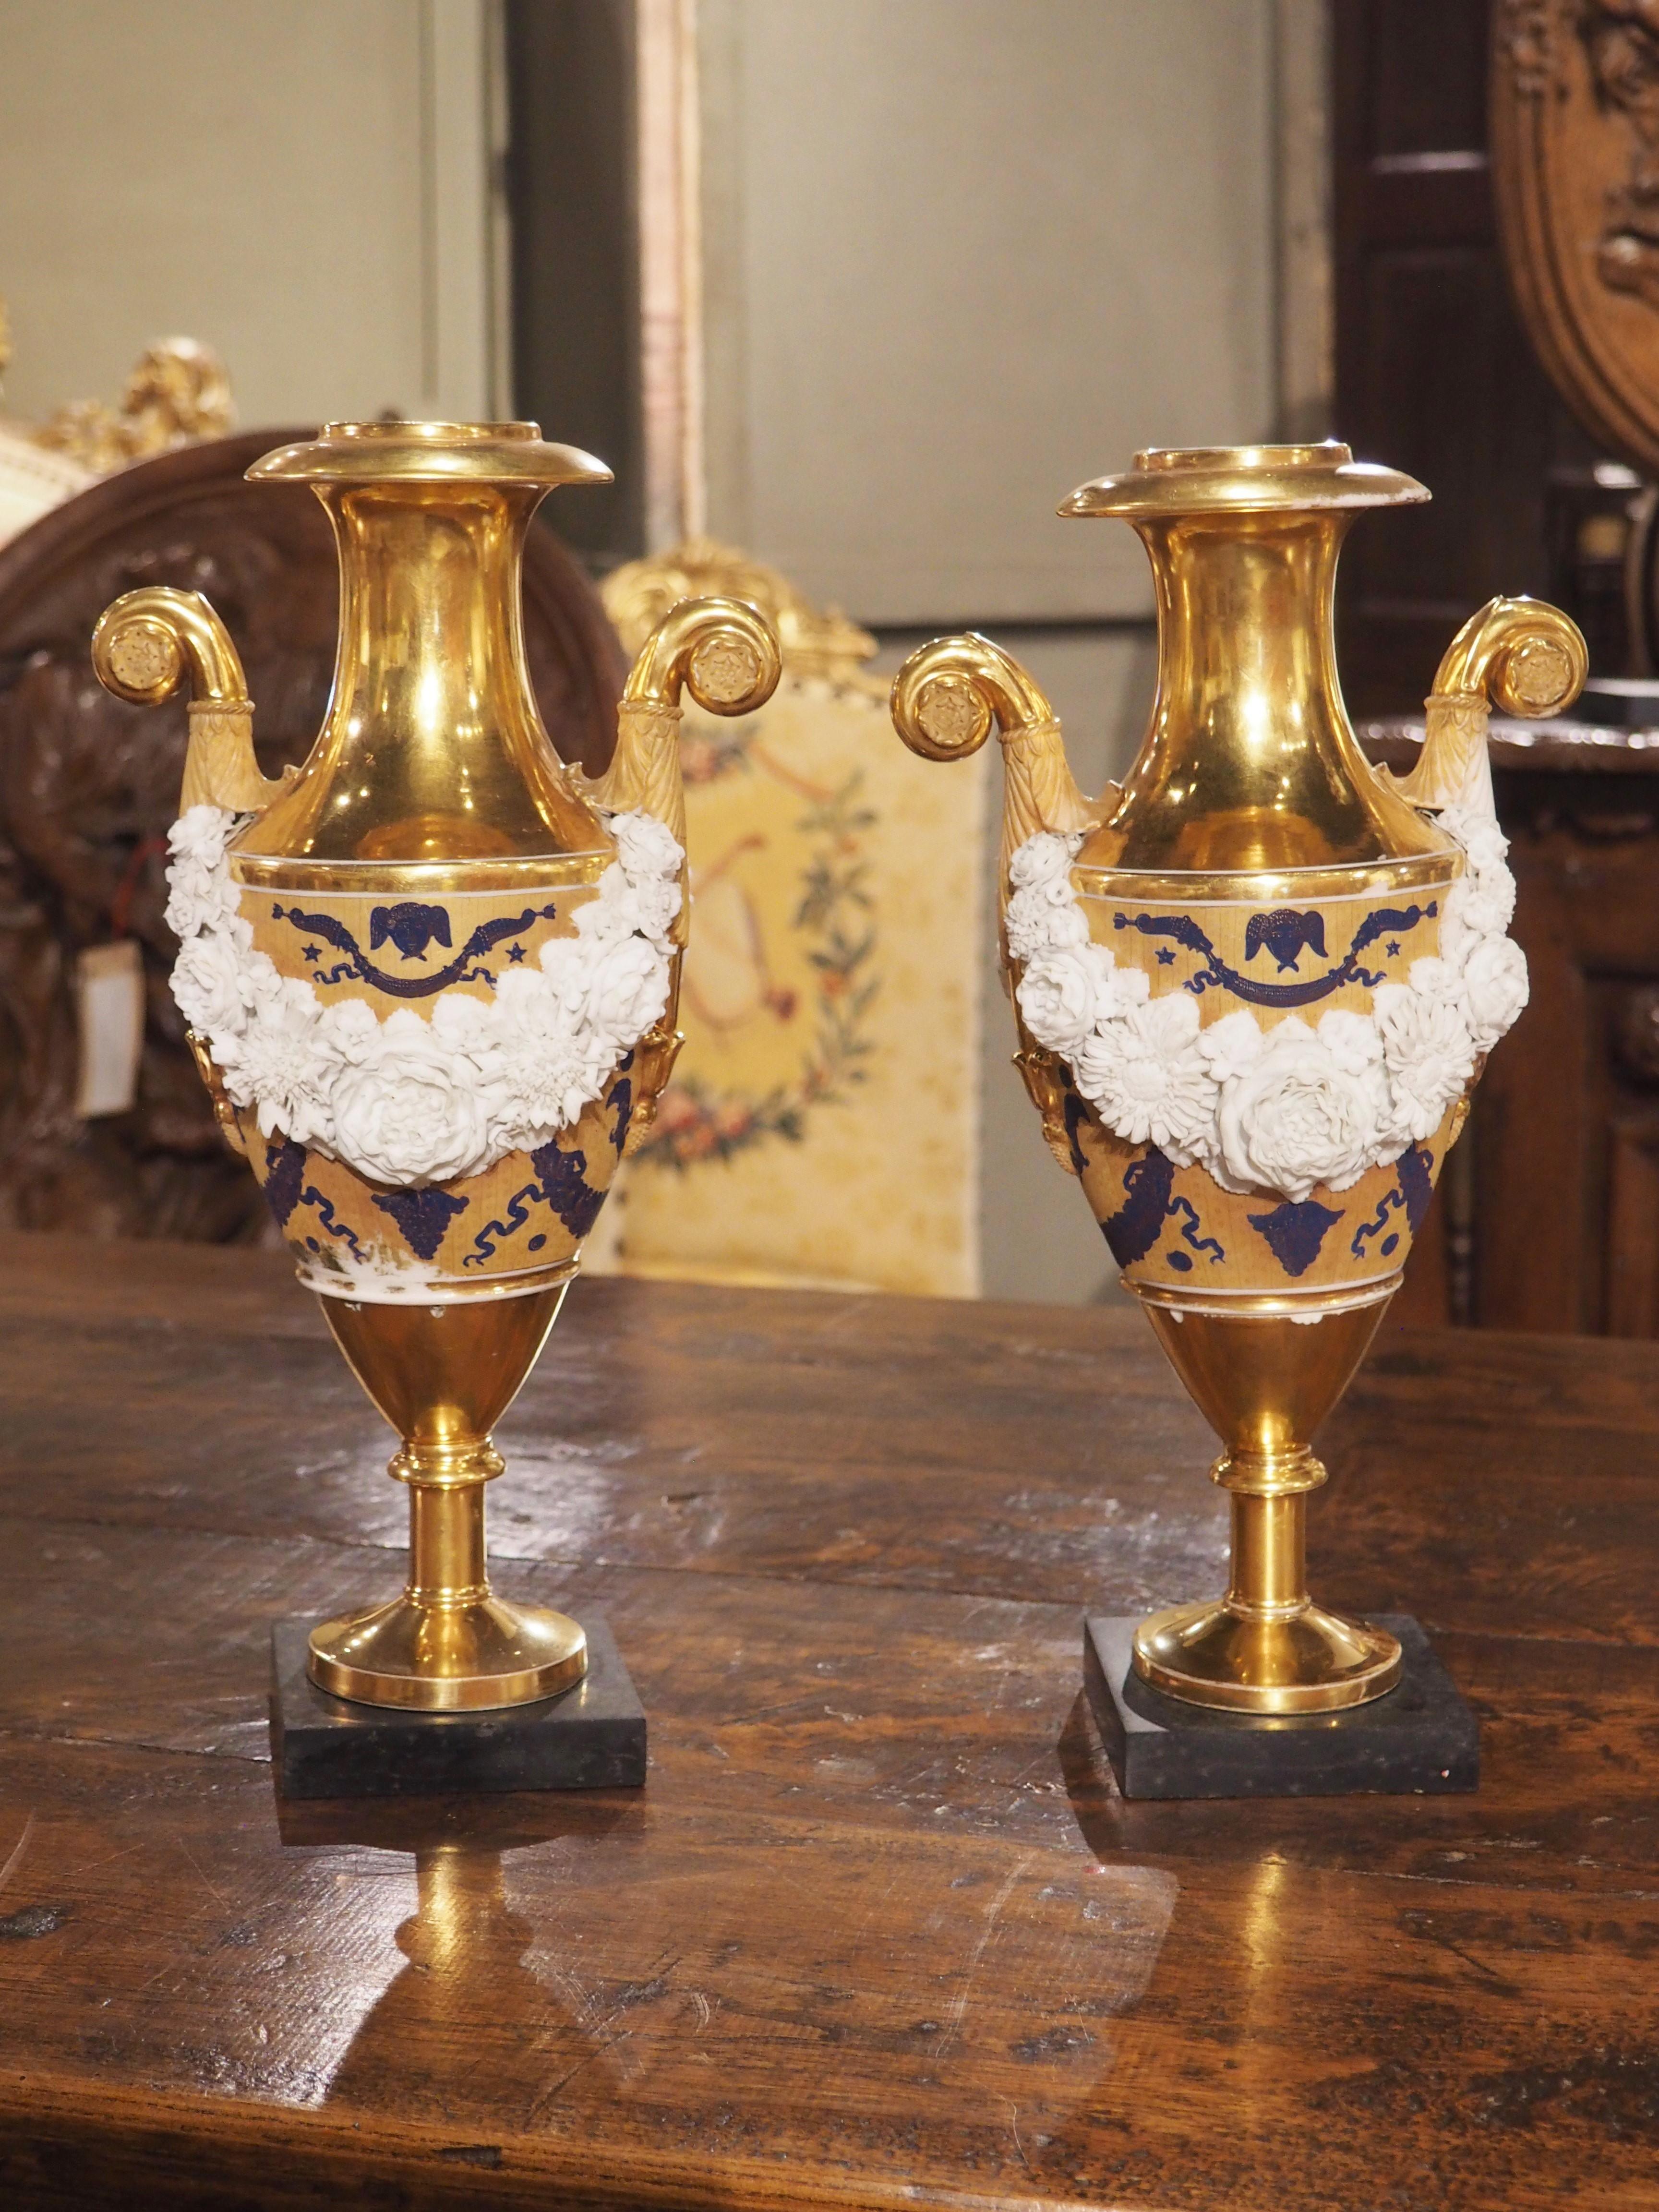 Avec ses éléments néoclassiques, cette paire de vases en porcelaine française est de style Louis XVI. Fabriqué vers 1870, les détails étonnants des guirlandes sont mis en valeur par la riche coloration des éléments peints à la main et de la